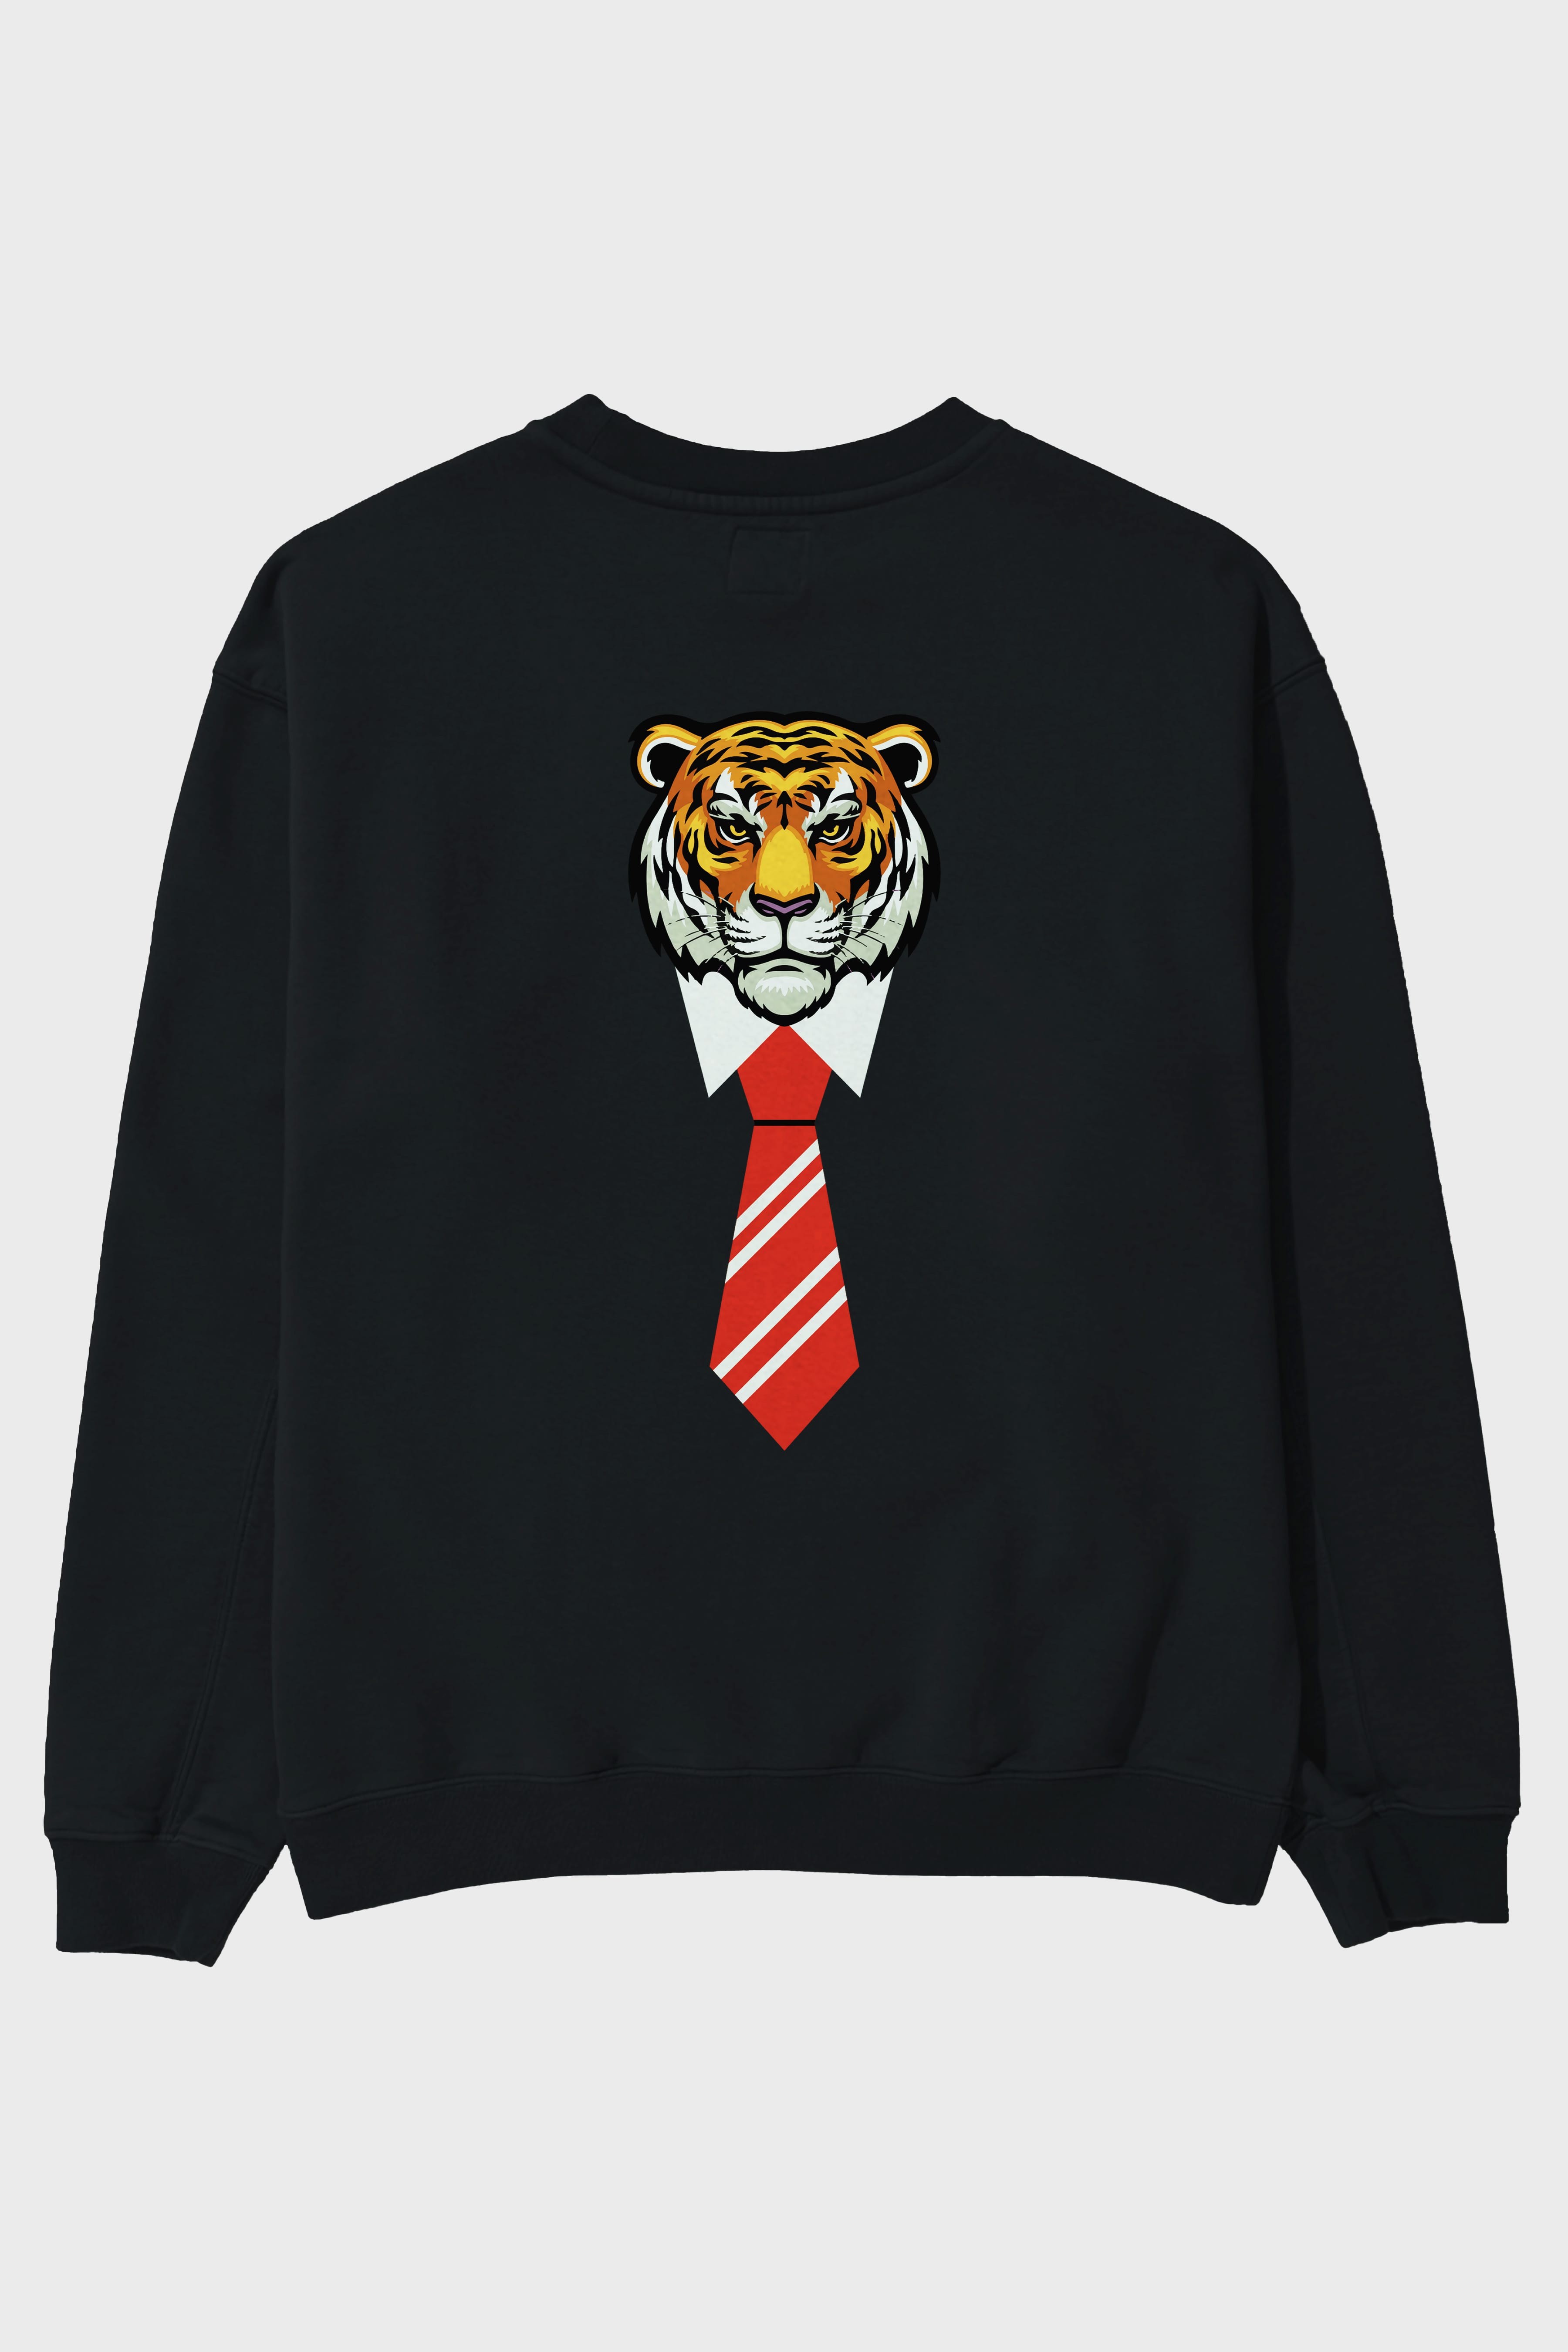 Tiger With Tie Arka Baskılı Oversize Sweatshirt Erkek Kadın Unisex